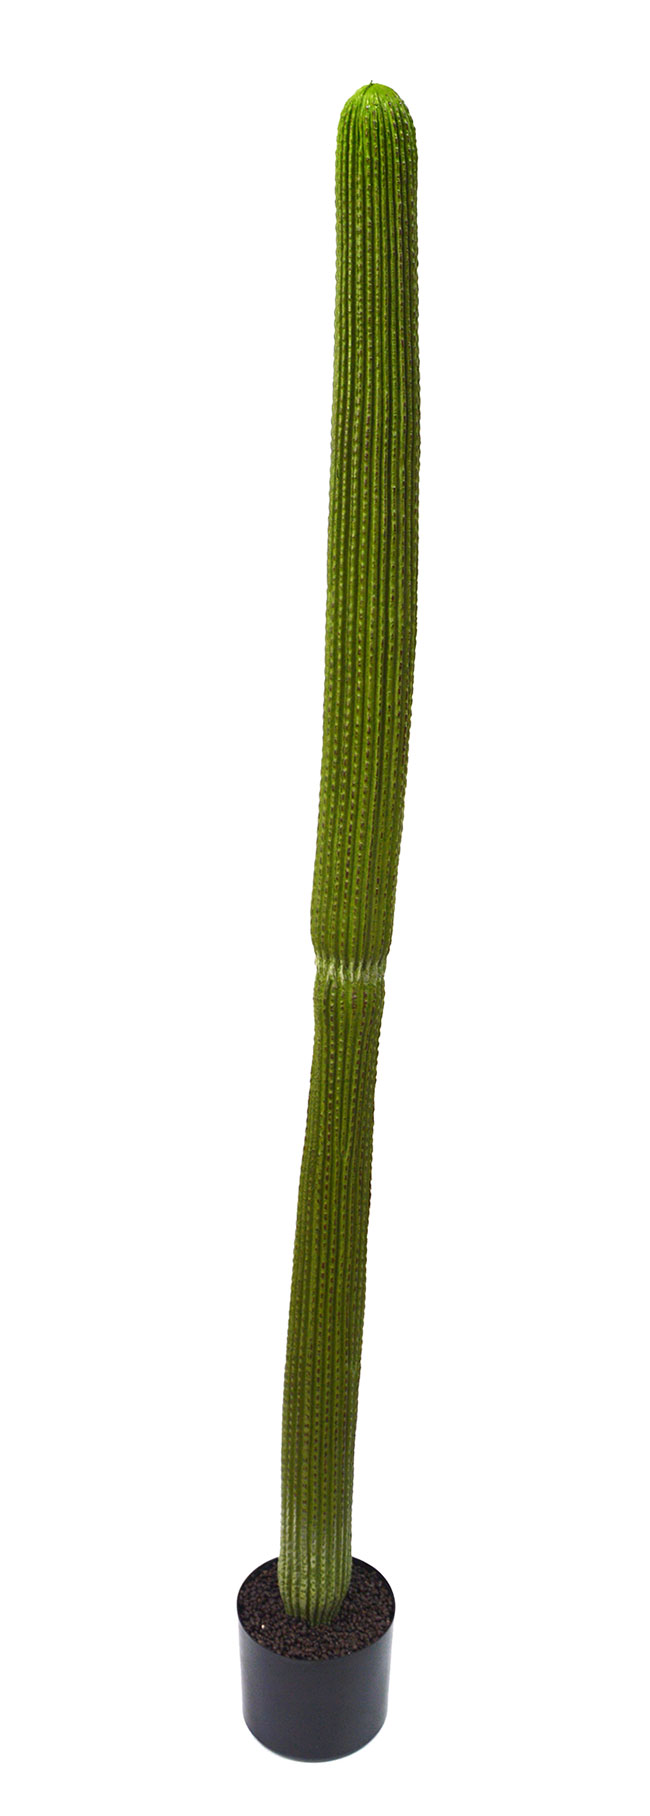 Cactii- Column Cactus 1.45m